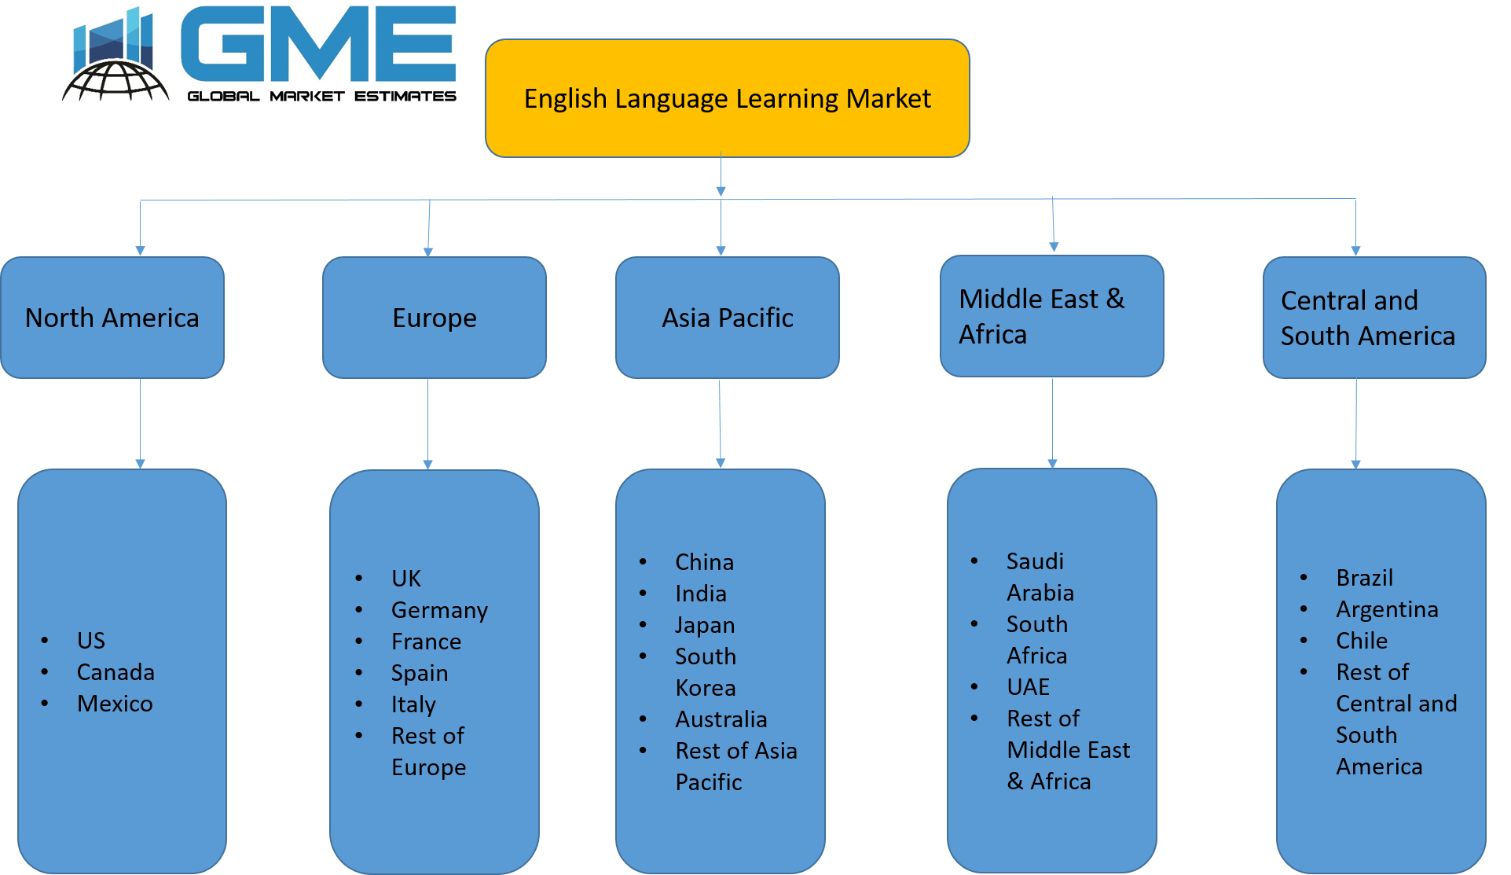 English Language Learning Market - Regional Analysis